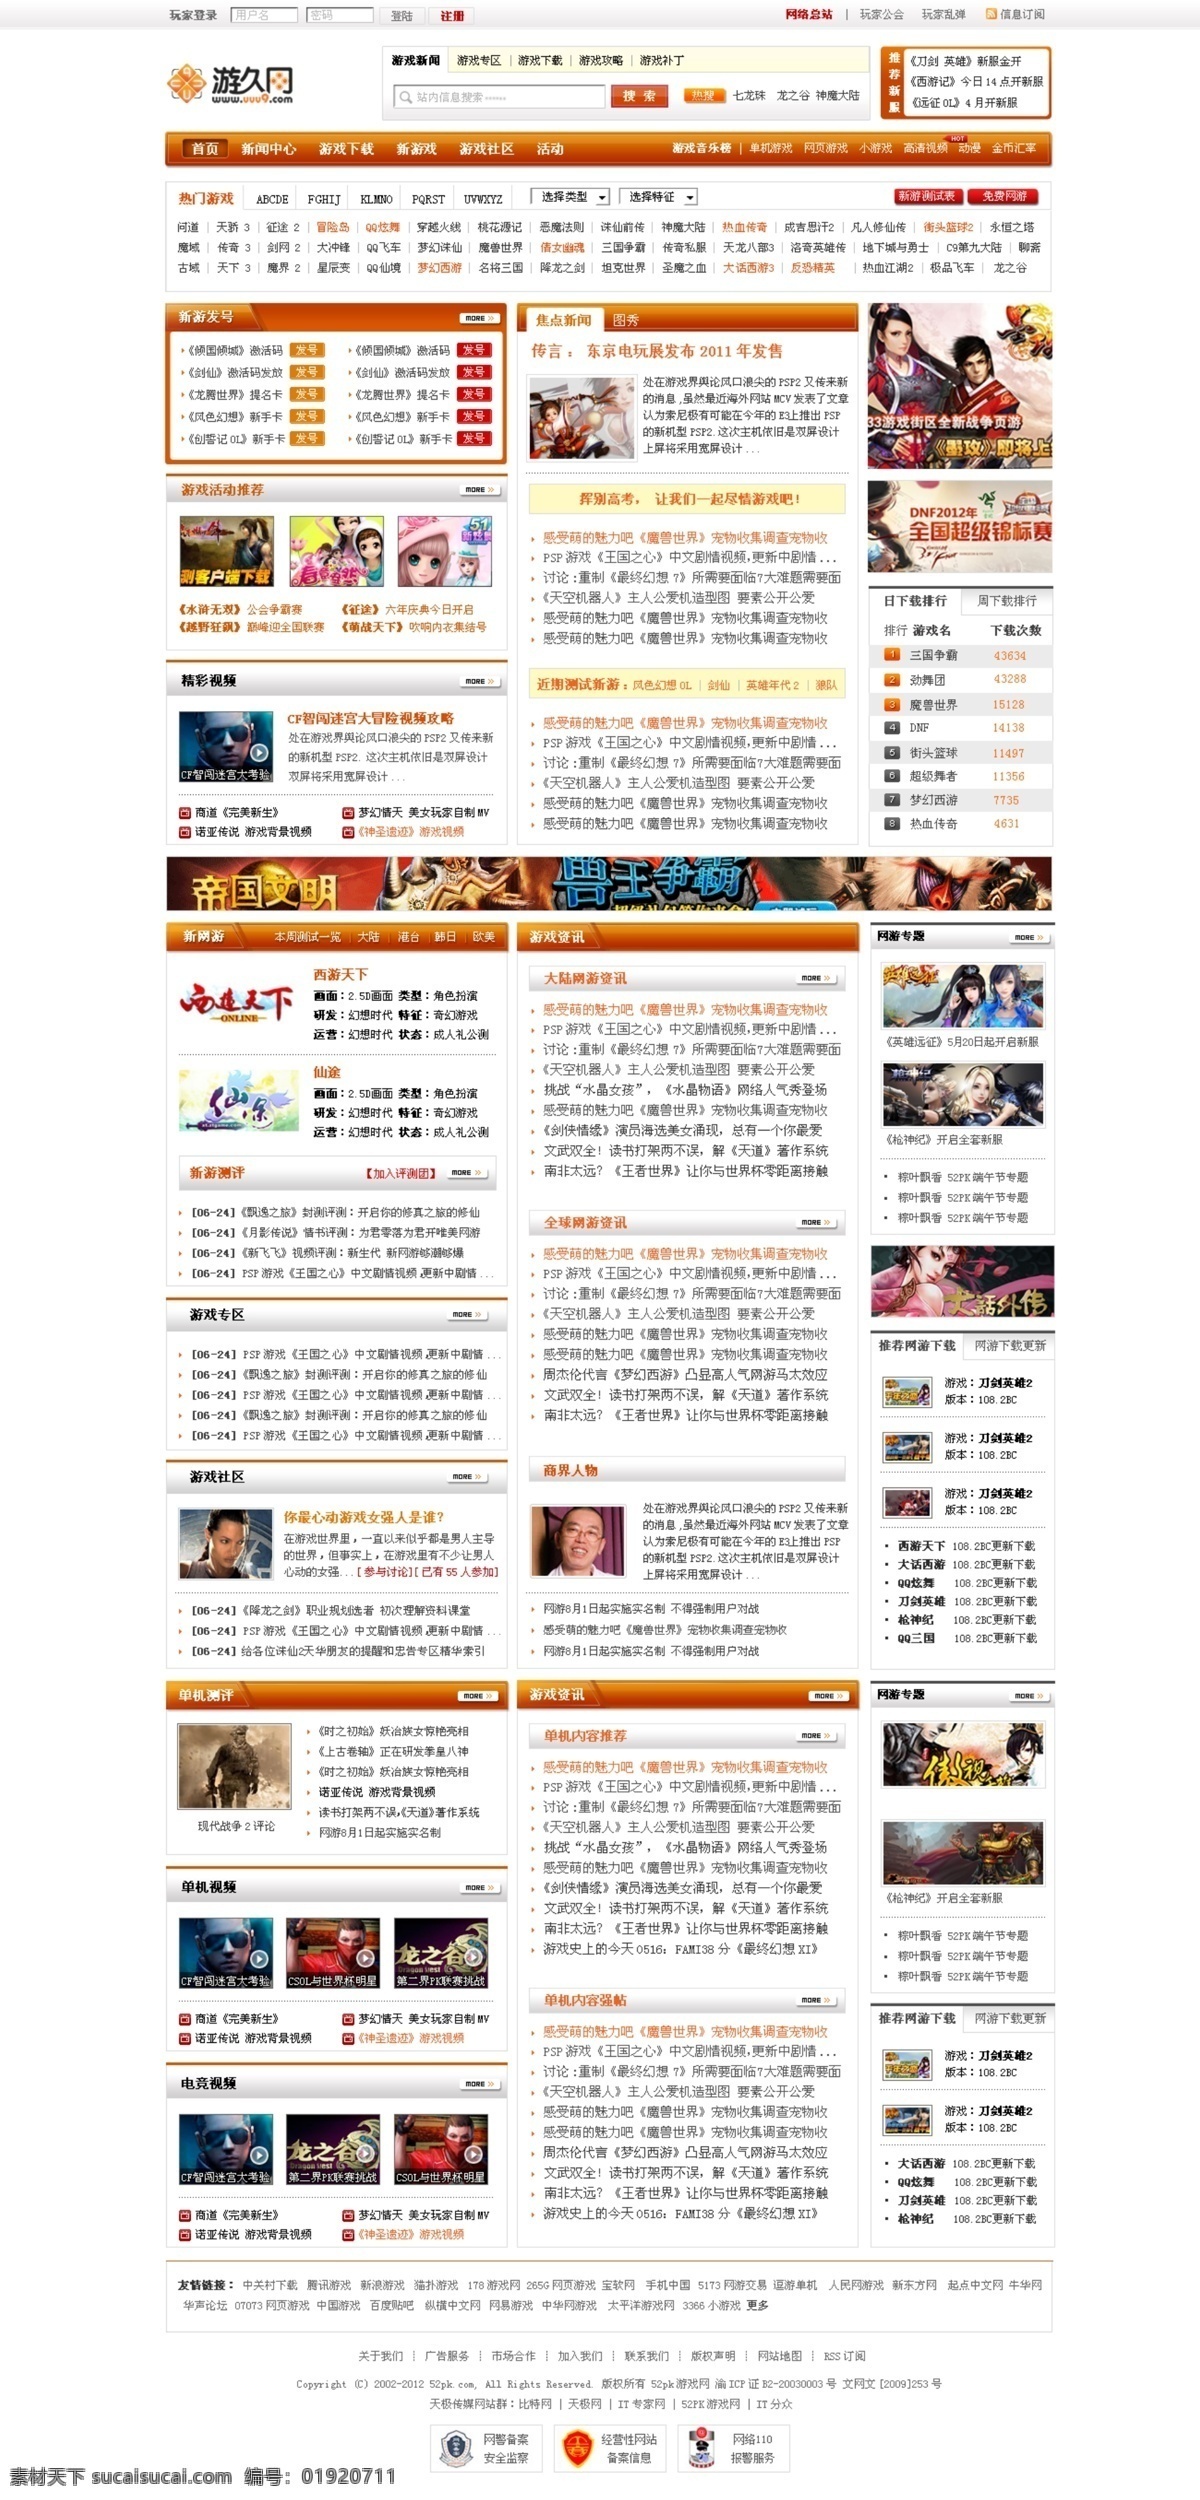 logo 导航 网页模板 网站 游戏 游戏网站 源文件 模板下载 3号 中文模板 网页素材